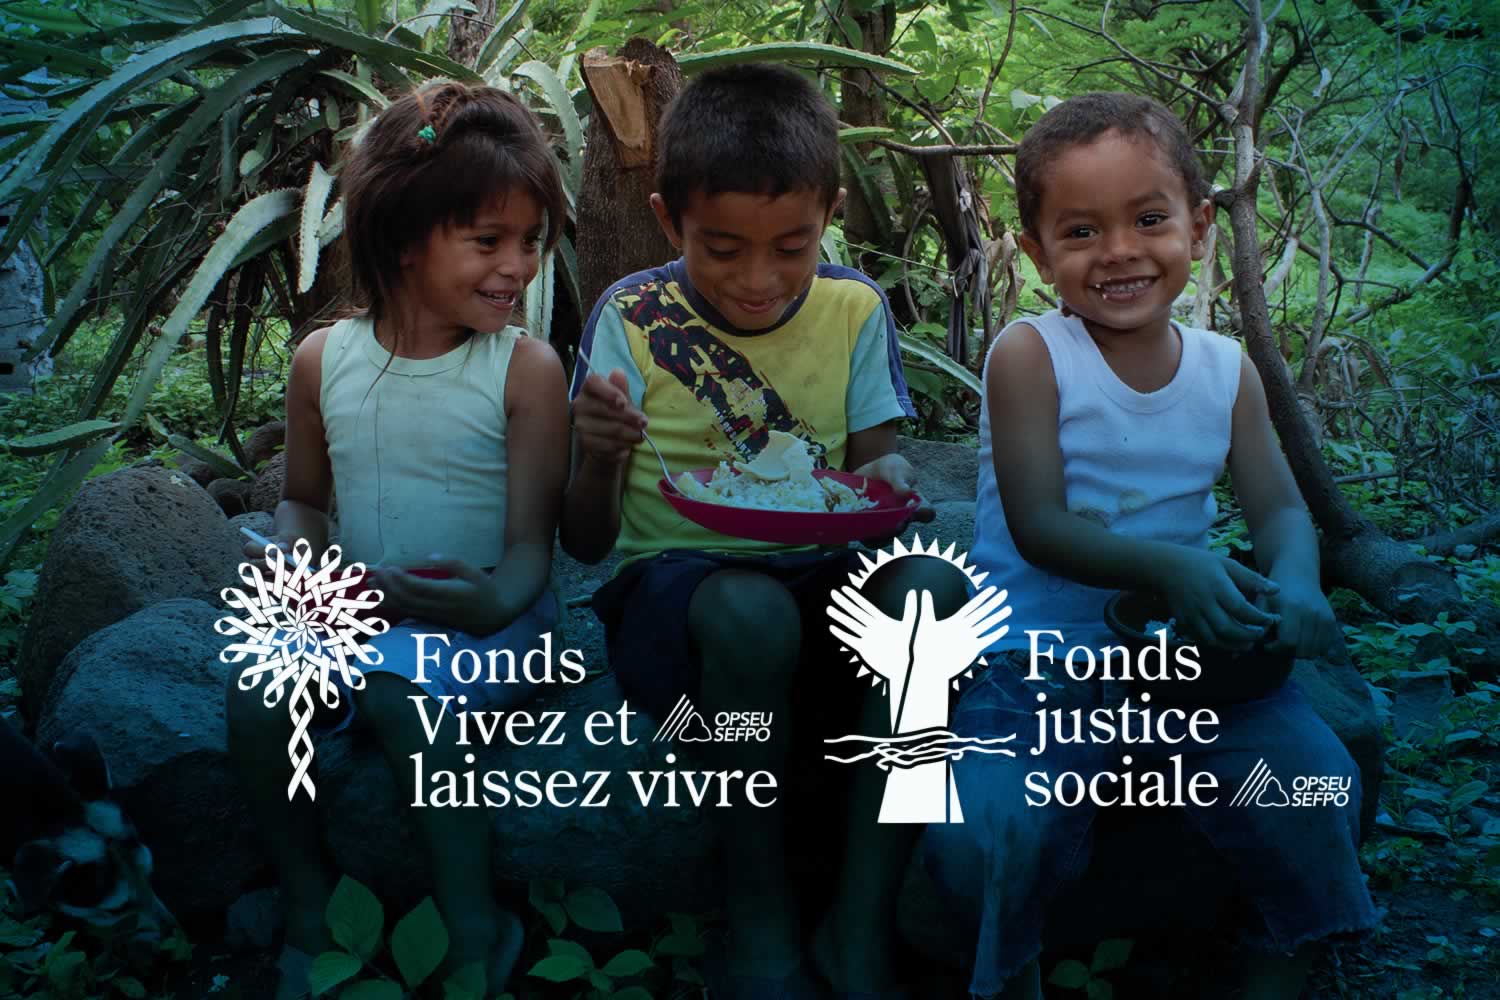 SEFPO Fonds vivez et laissez vivre, Fonds justice sociale